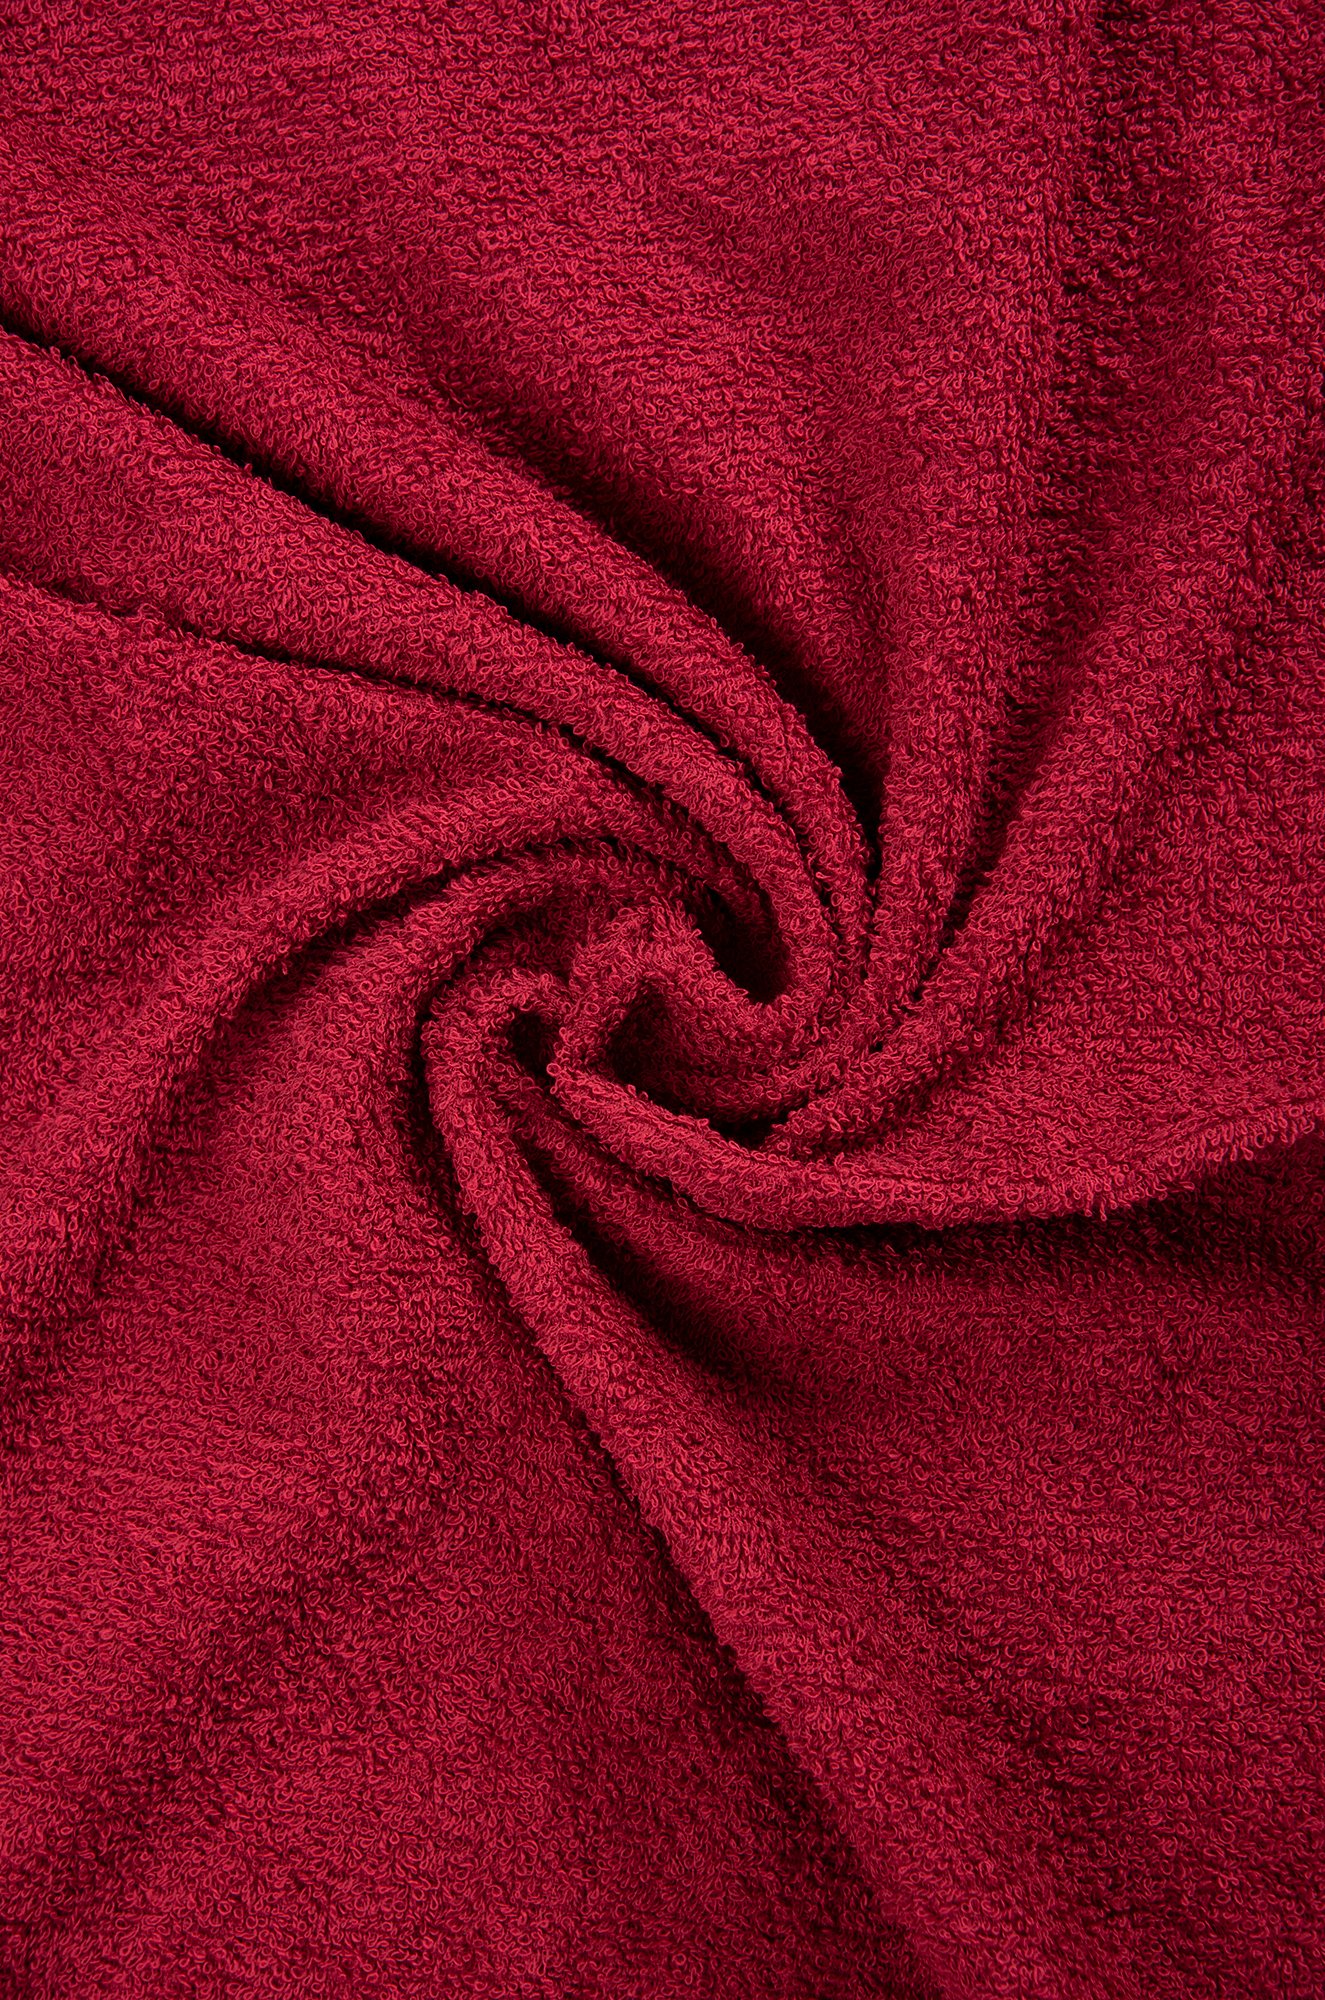 Набор махровых полотенец 2шт Вышневолоцкий текстиль